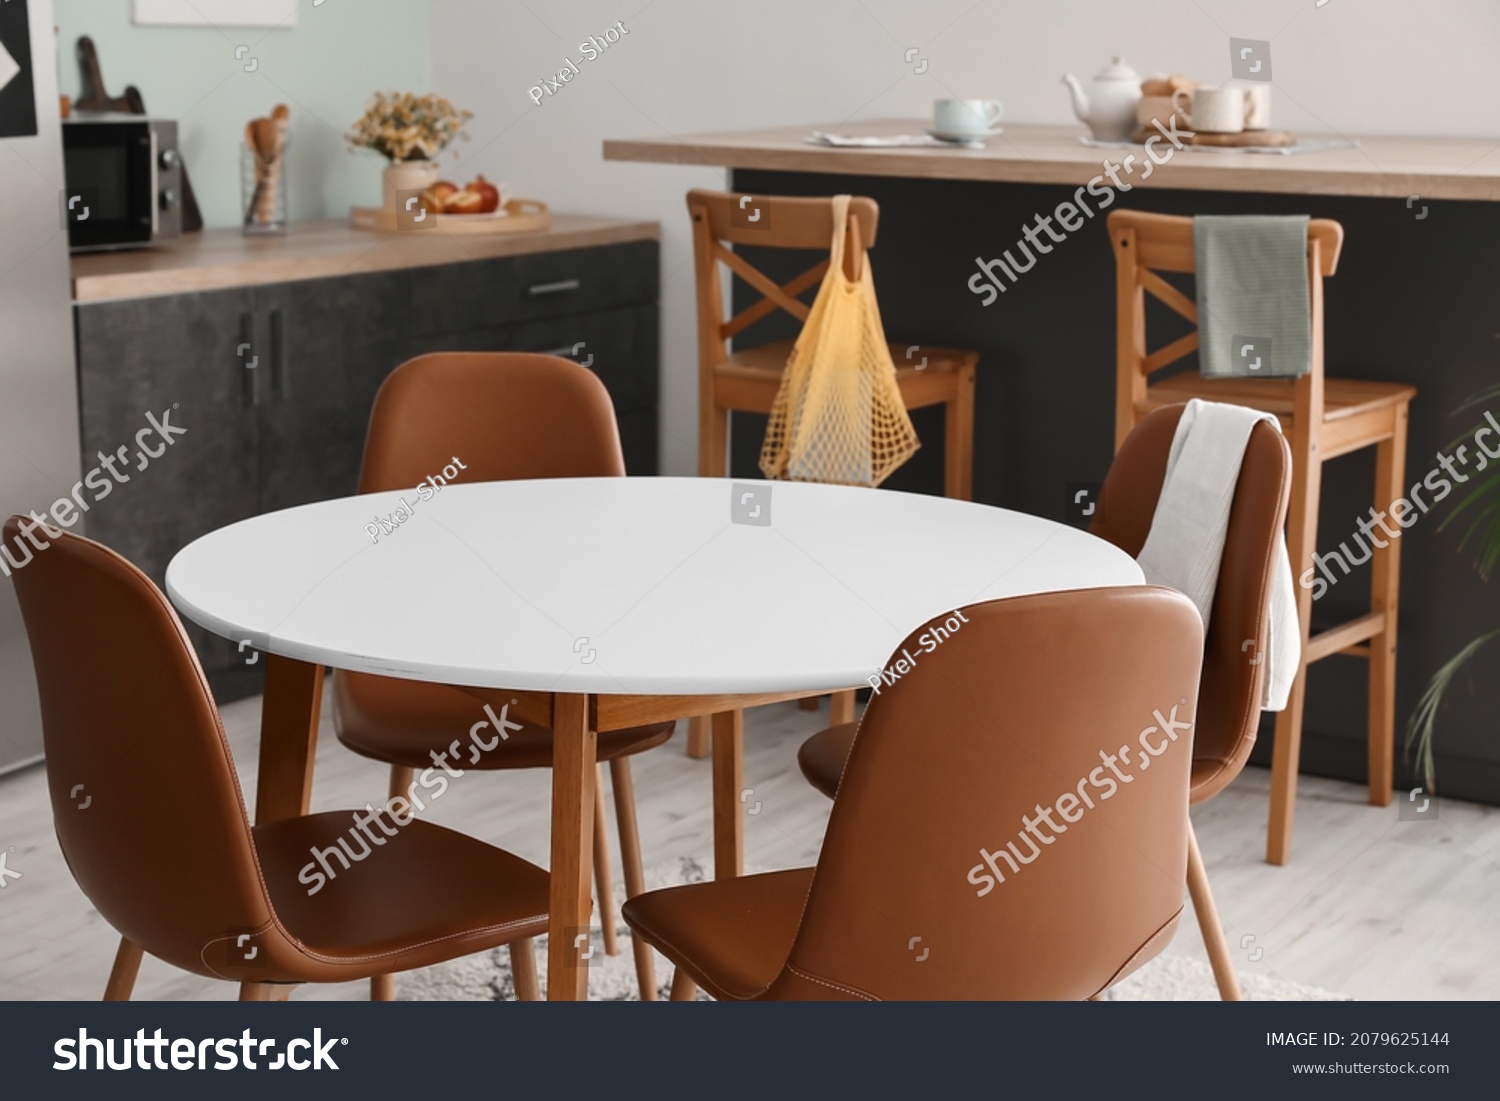 kitchen table alastair miller photographer